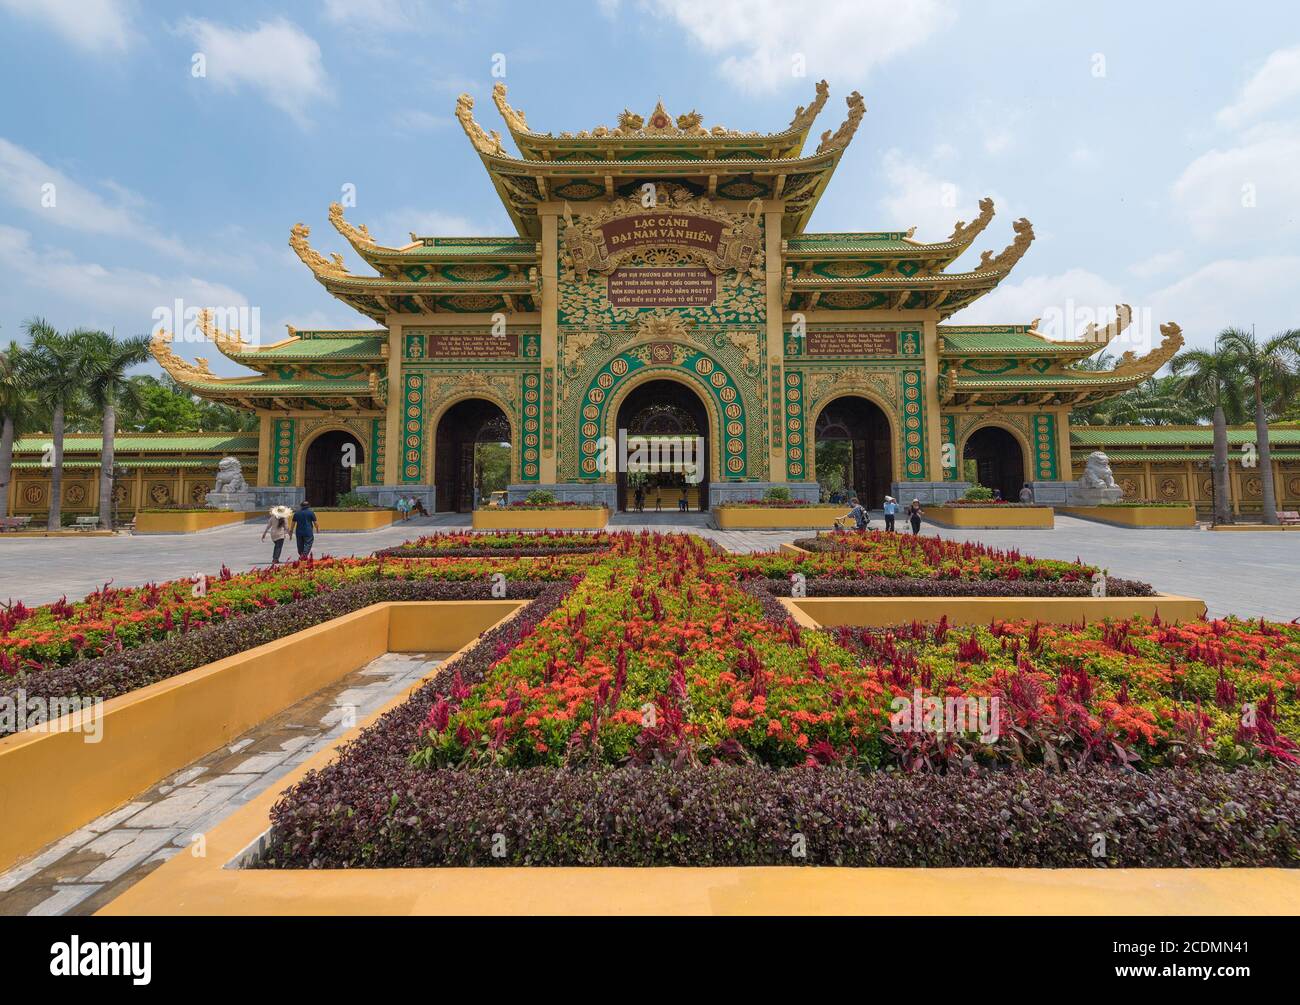 Arco en el parque Dainam, Hochiminh, Vietnam Foto de stock